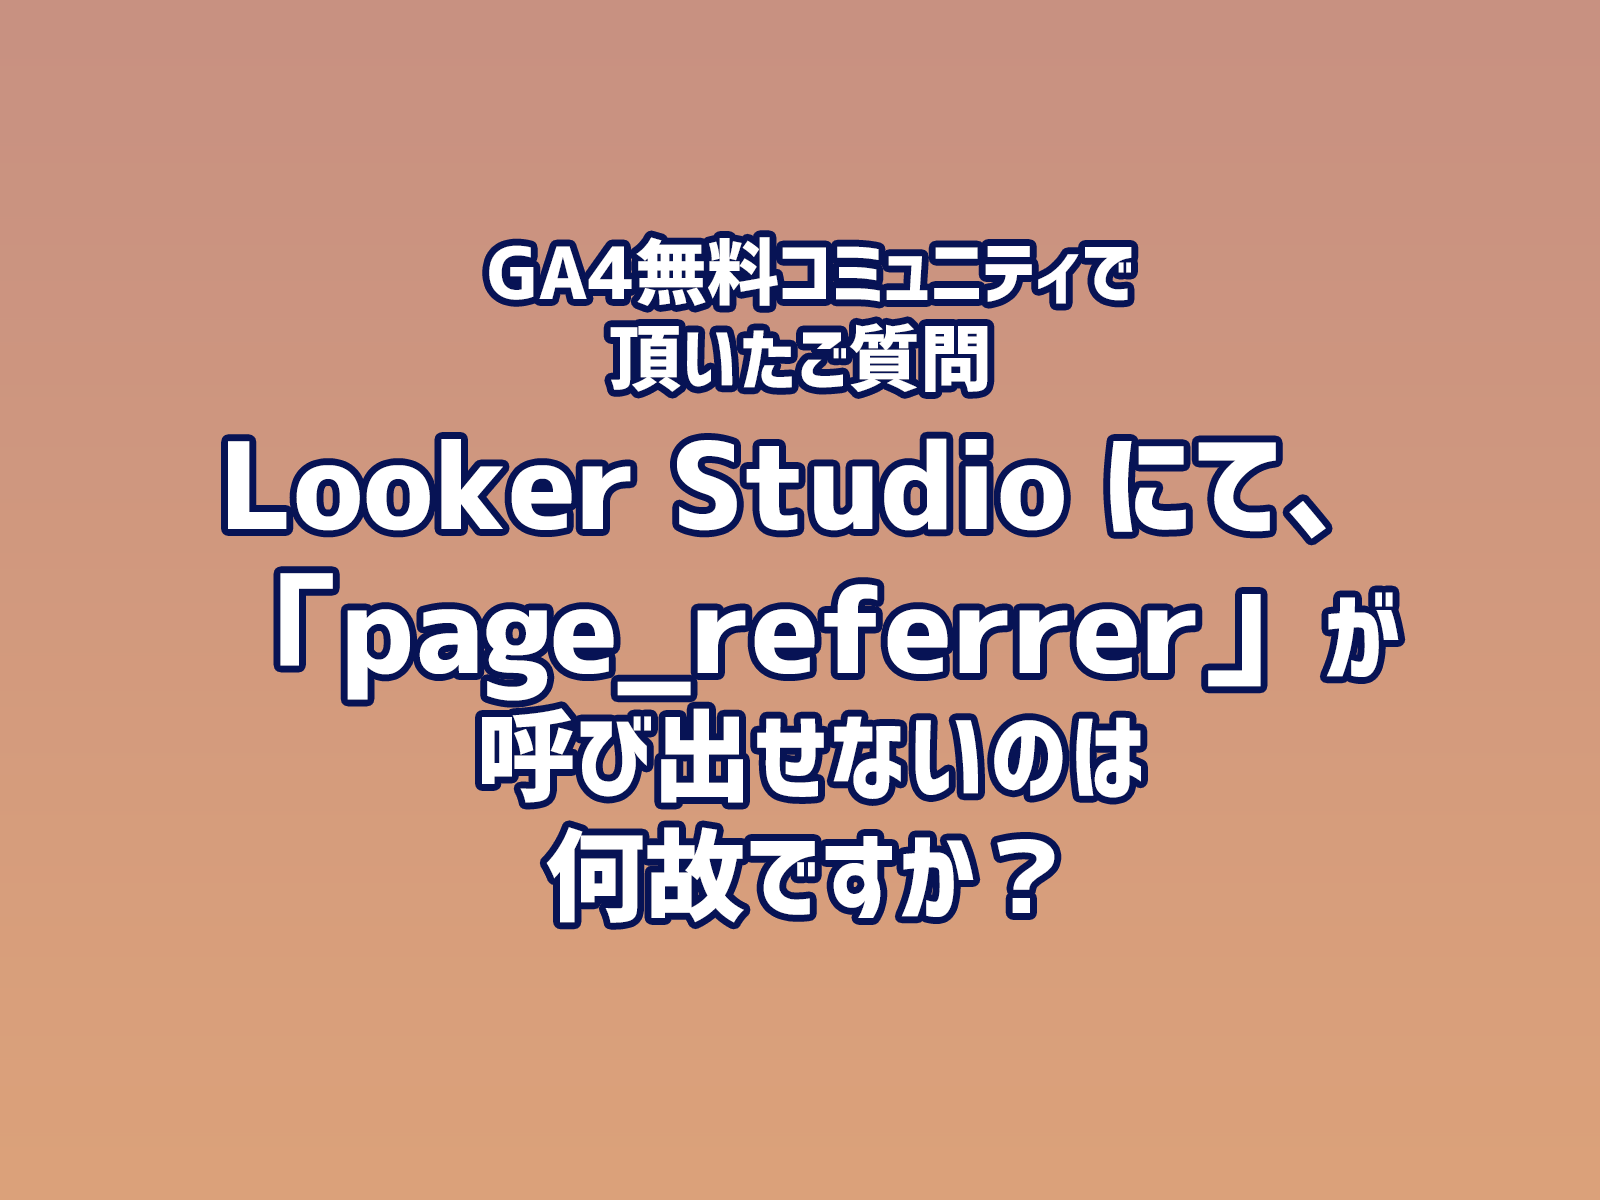 Cover Image for GA4無料コミュニティで頂いたご質問 「Looker Studio にて、『page_referrer』が呼び出せないのは何故ですか？」